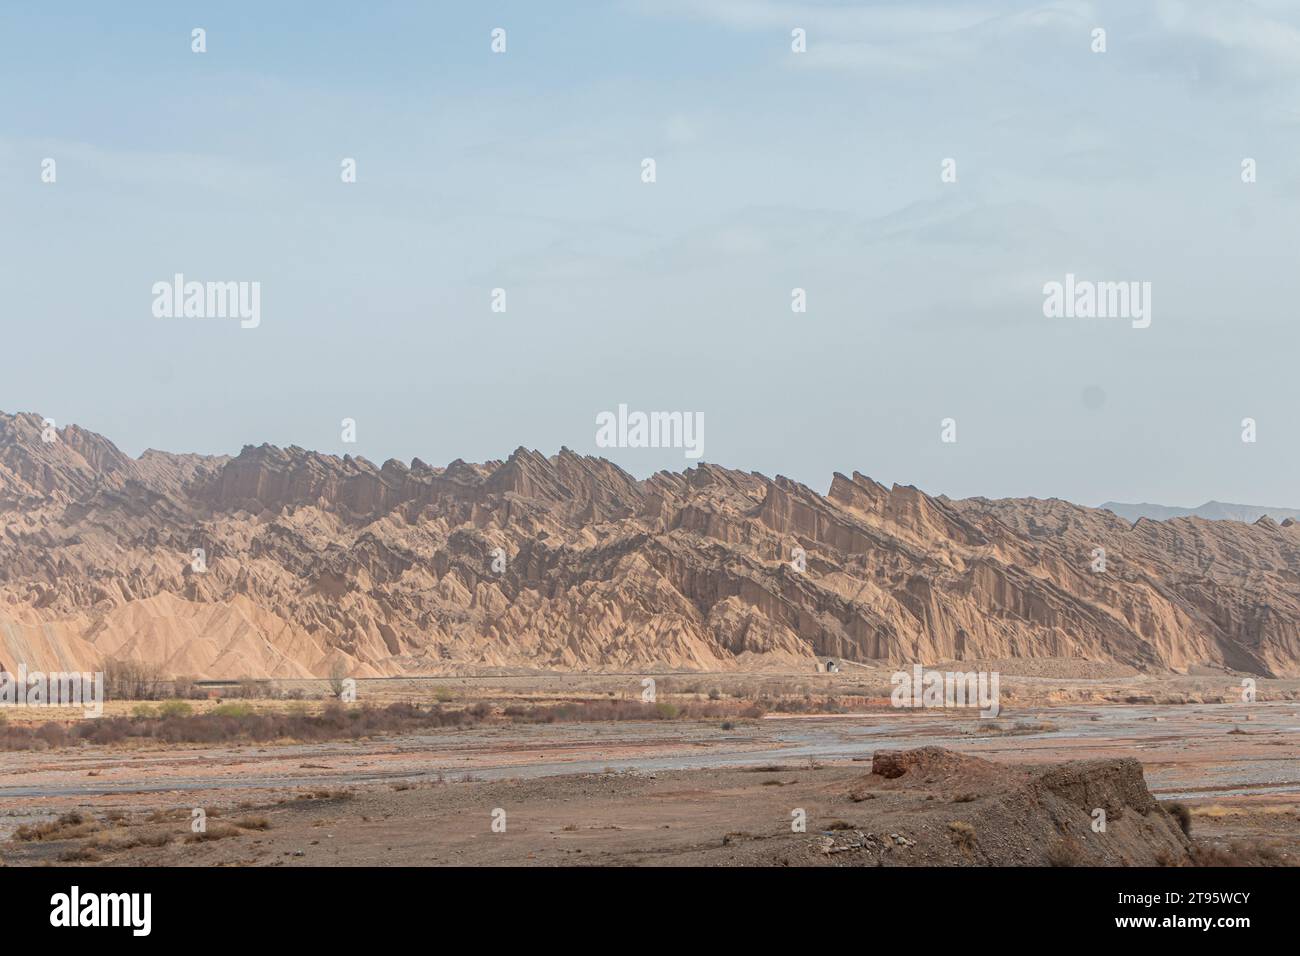 Le désert aride du Xinjiang, dans l'ouest de la Chine Banque D'Images